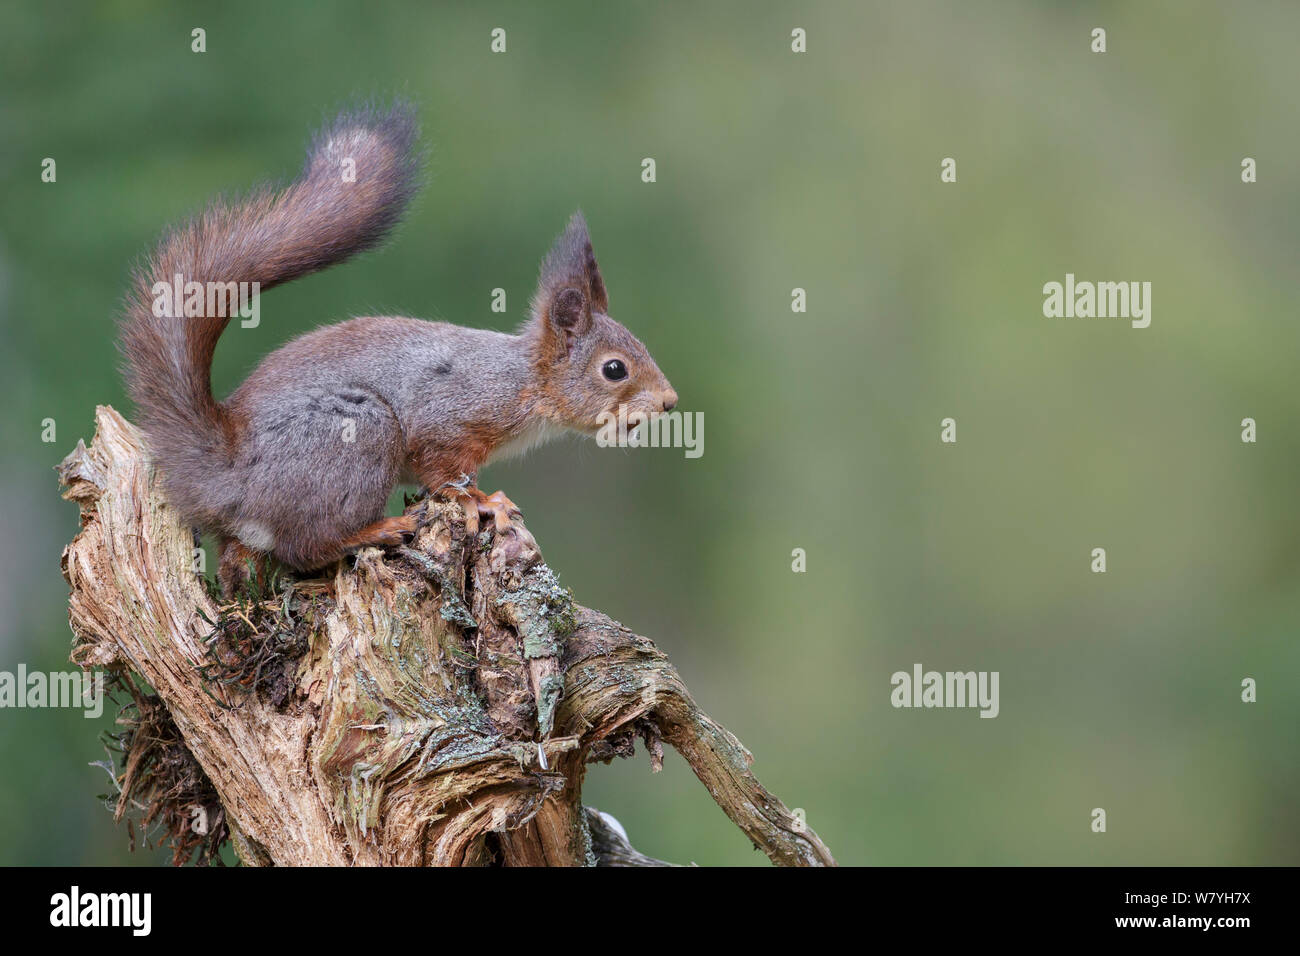 Eichhörnchen (Sciurus vulgaris) auf baumstumpf mit Hazel Mutter im Mund, angefangen seinen Wintermantel zu verlieren. Südliches Norwegen. Mai. Stockfoto